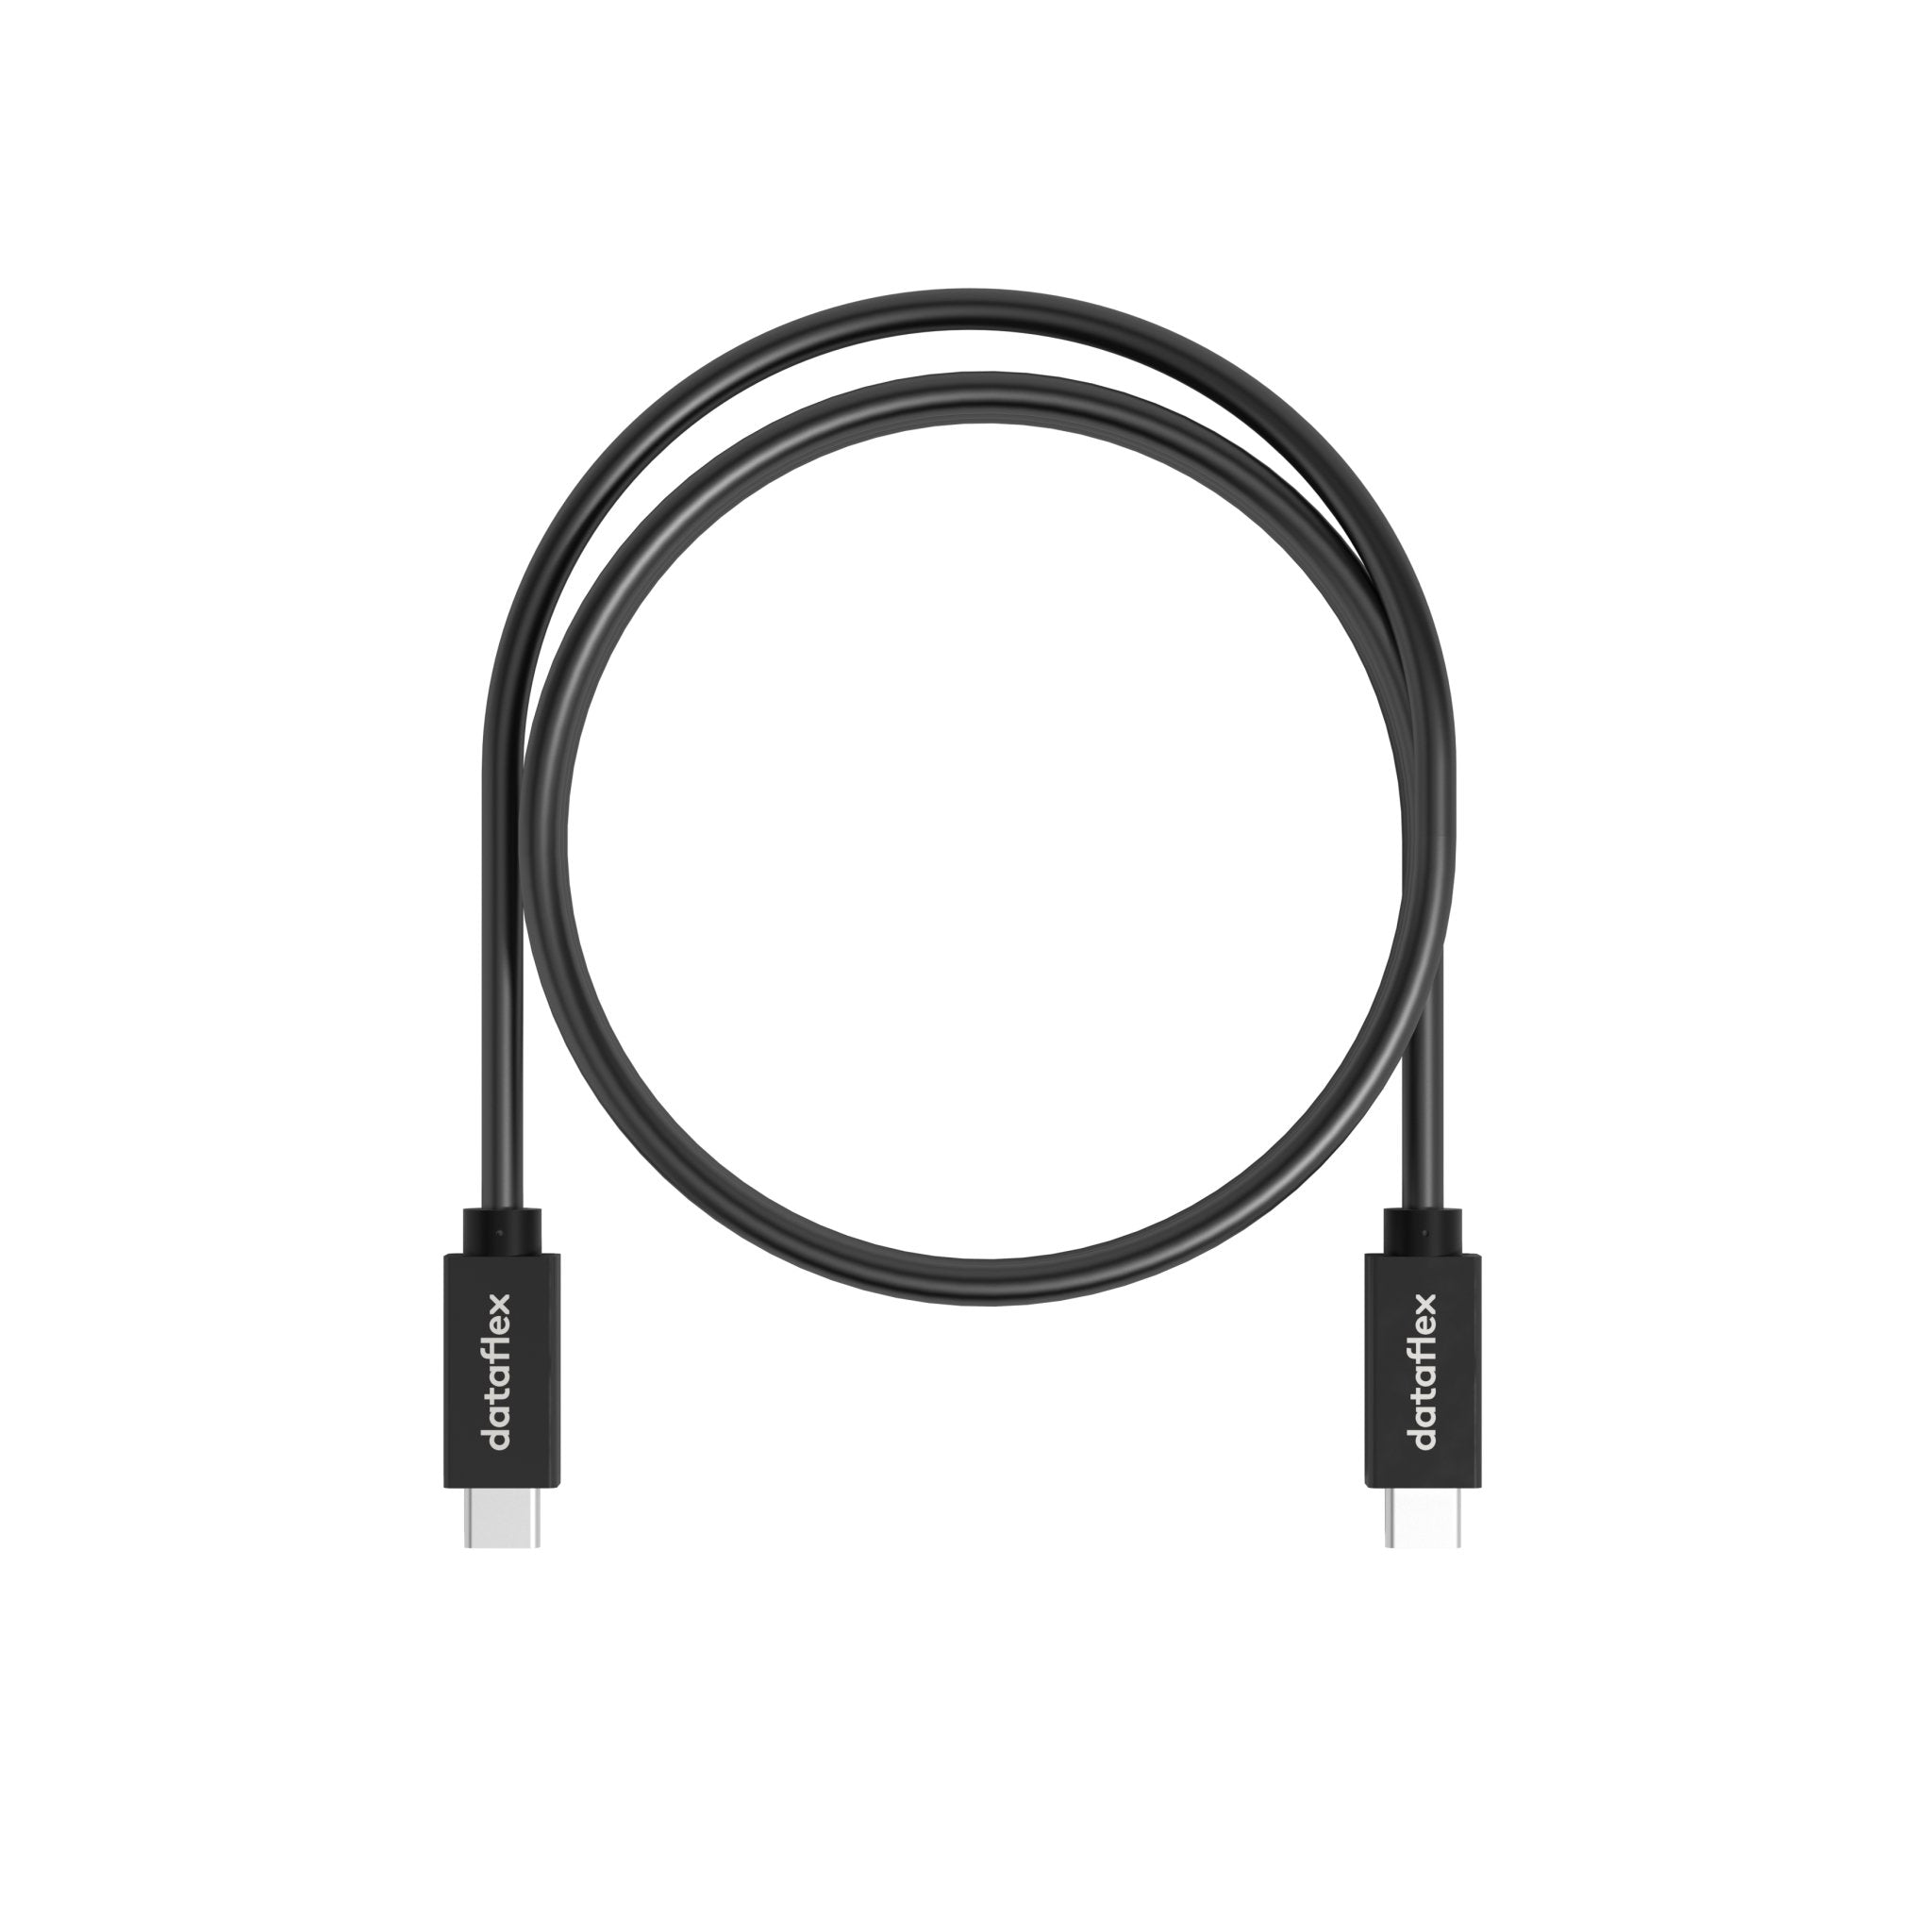 Zwarte USB-C kabel uit de Viewlite collectie van Dataflex